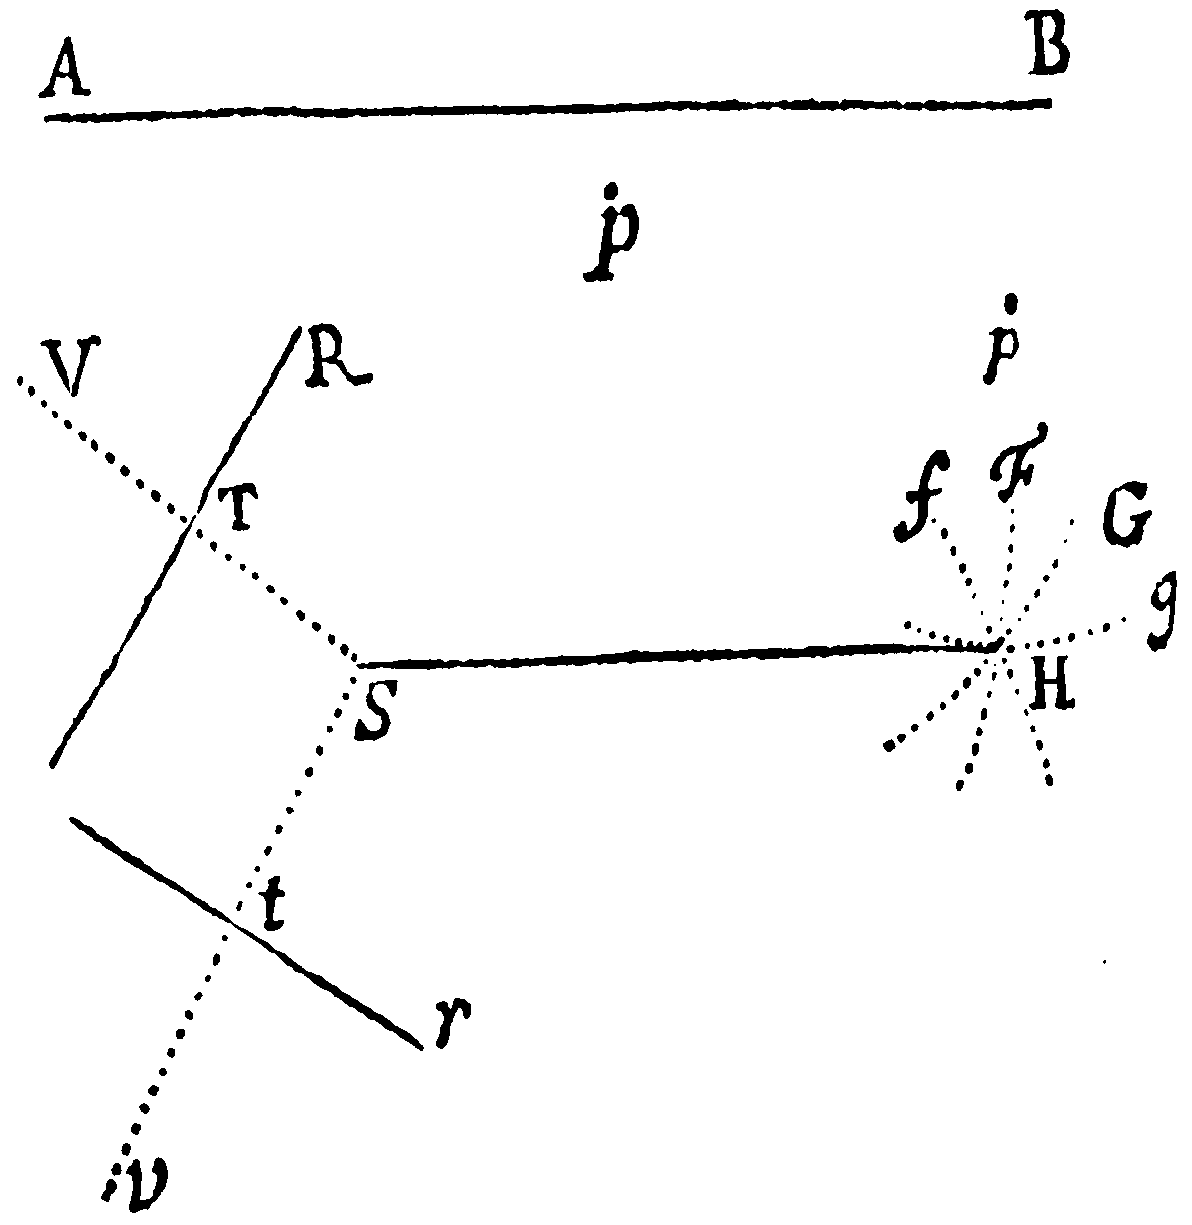 Figure for Prop. XVIII.